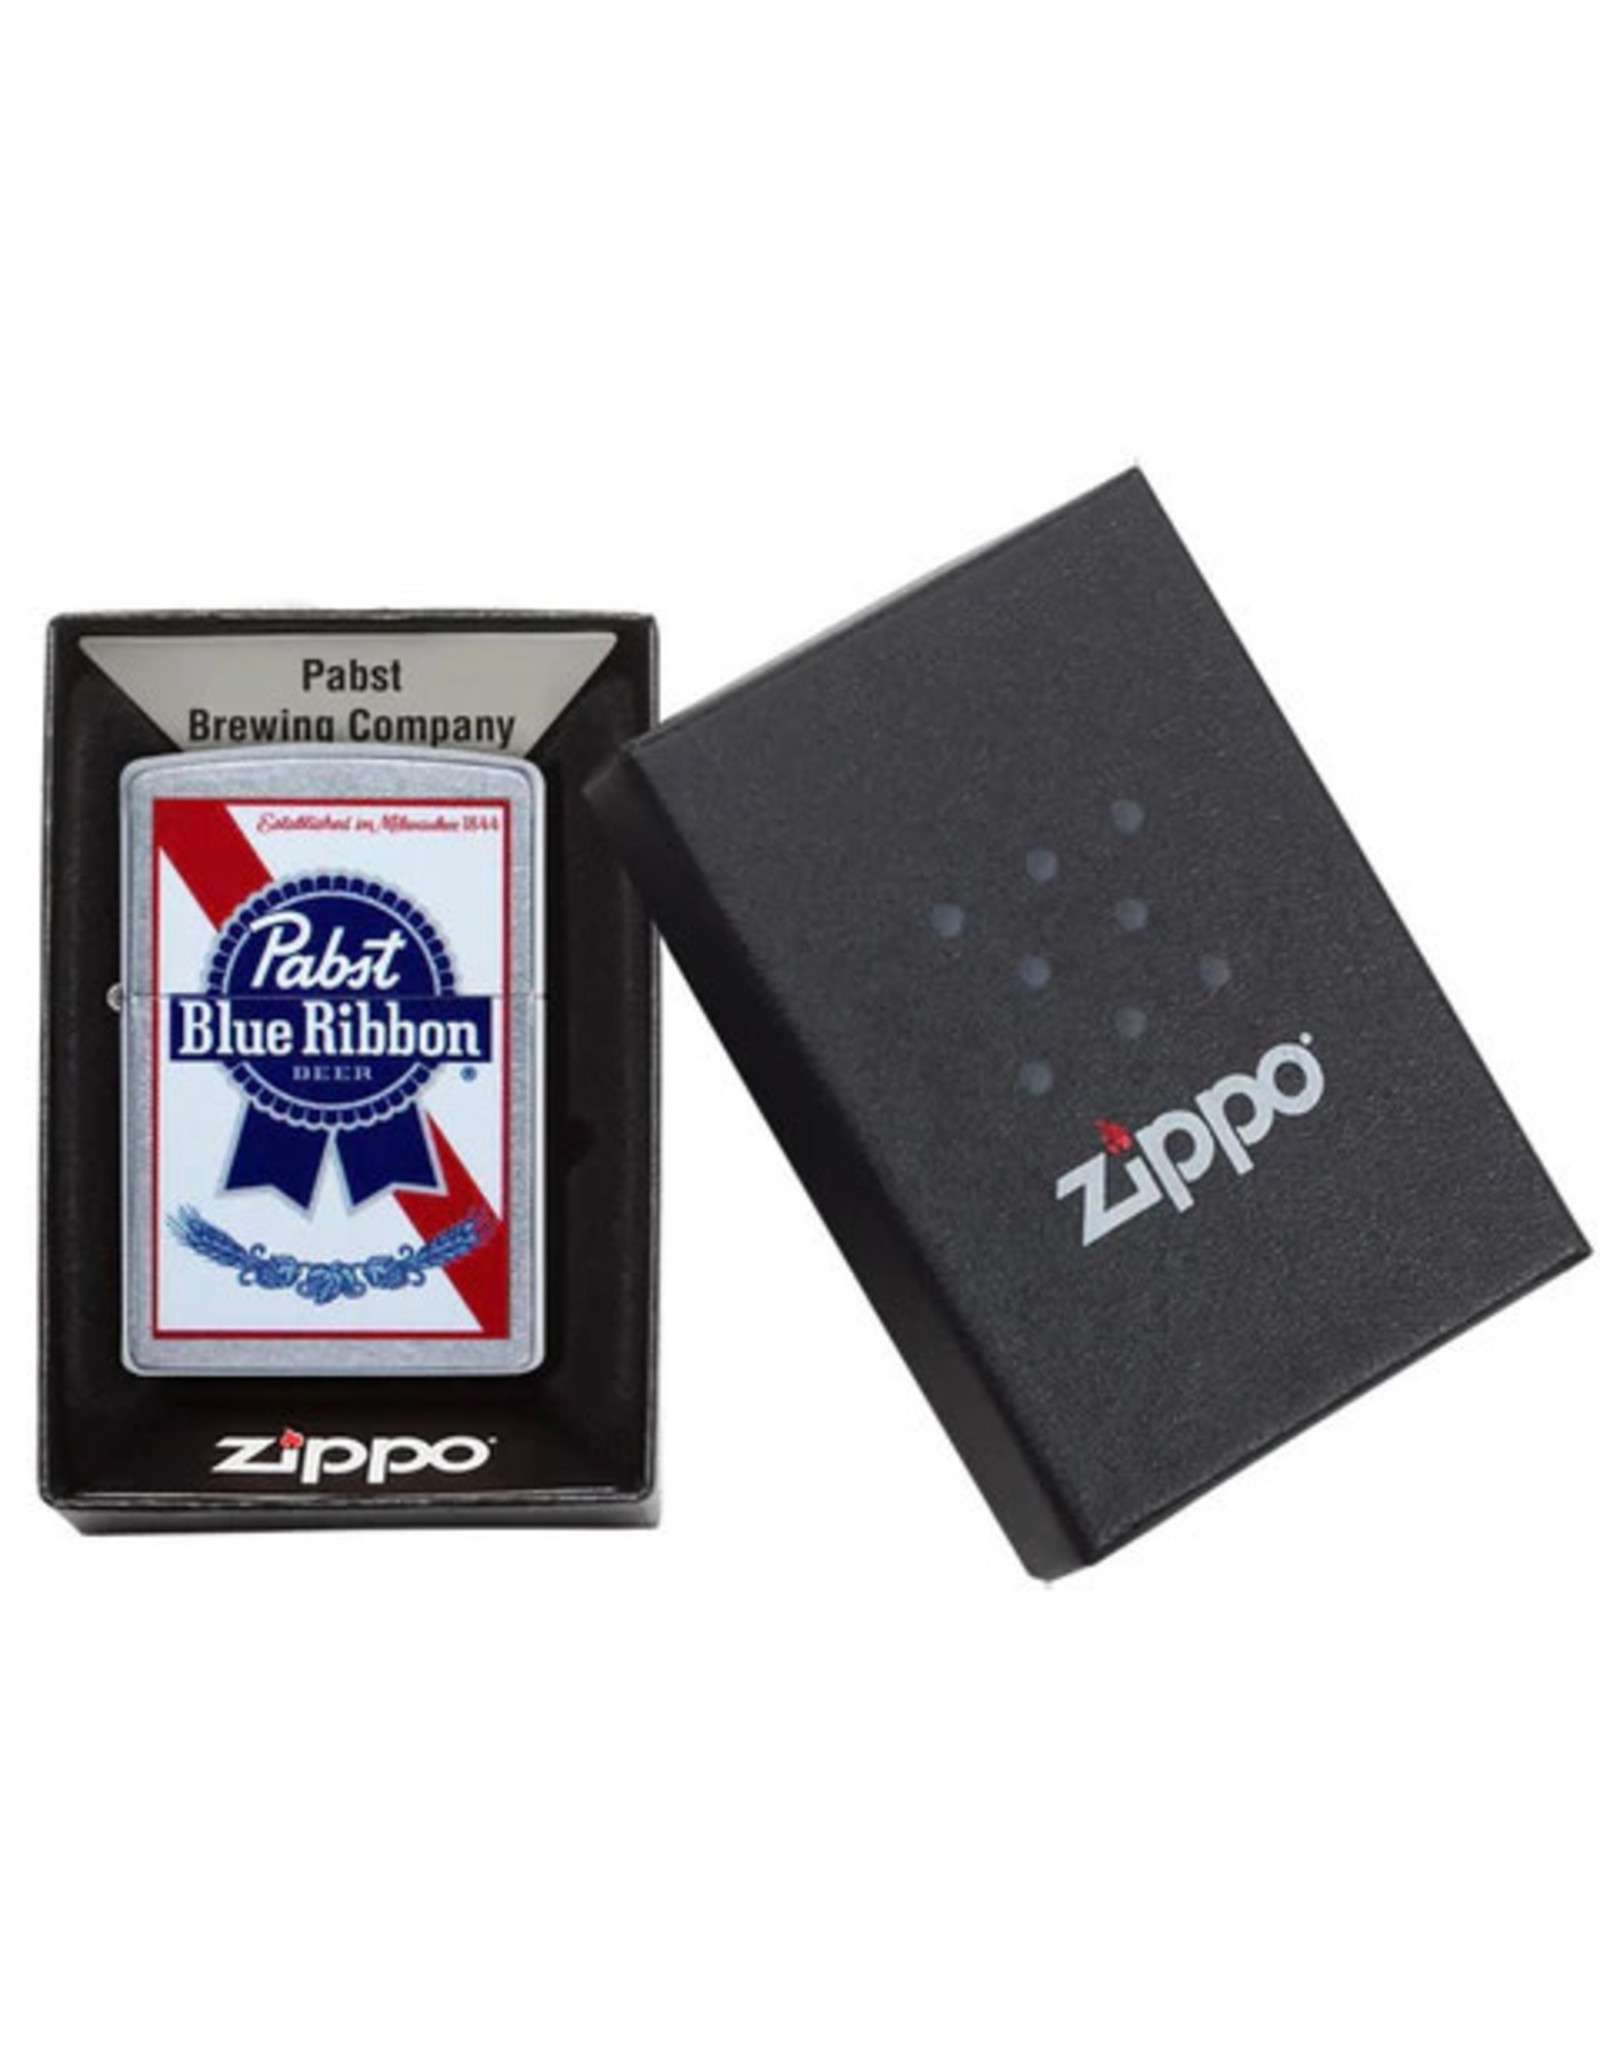 Zippo Pabst Blue Ribbon Street Chrome Lighter